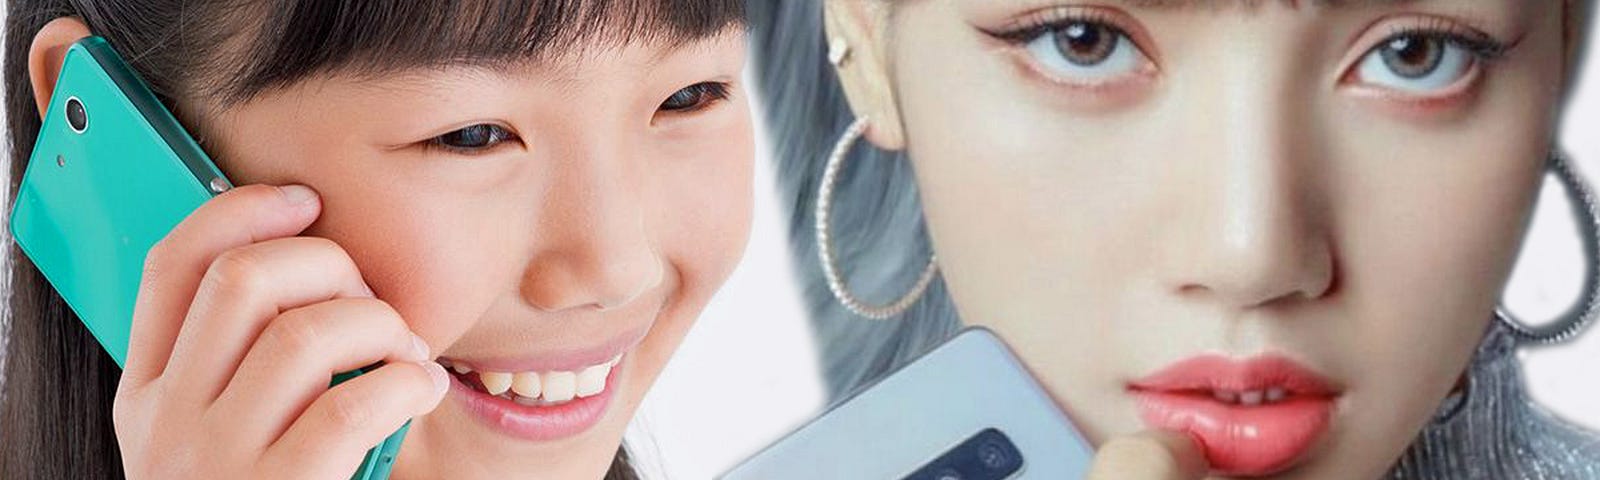 Японка (слева) и кореянка (справа) с мобильными телефонами думают над Вашим поведением [фотоколлаж]